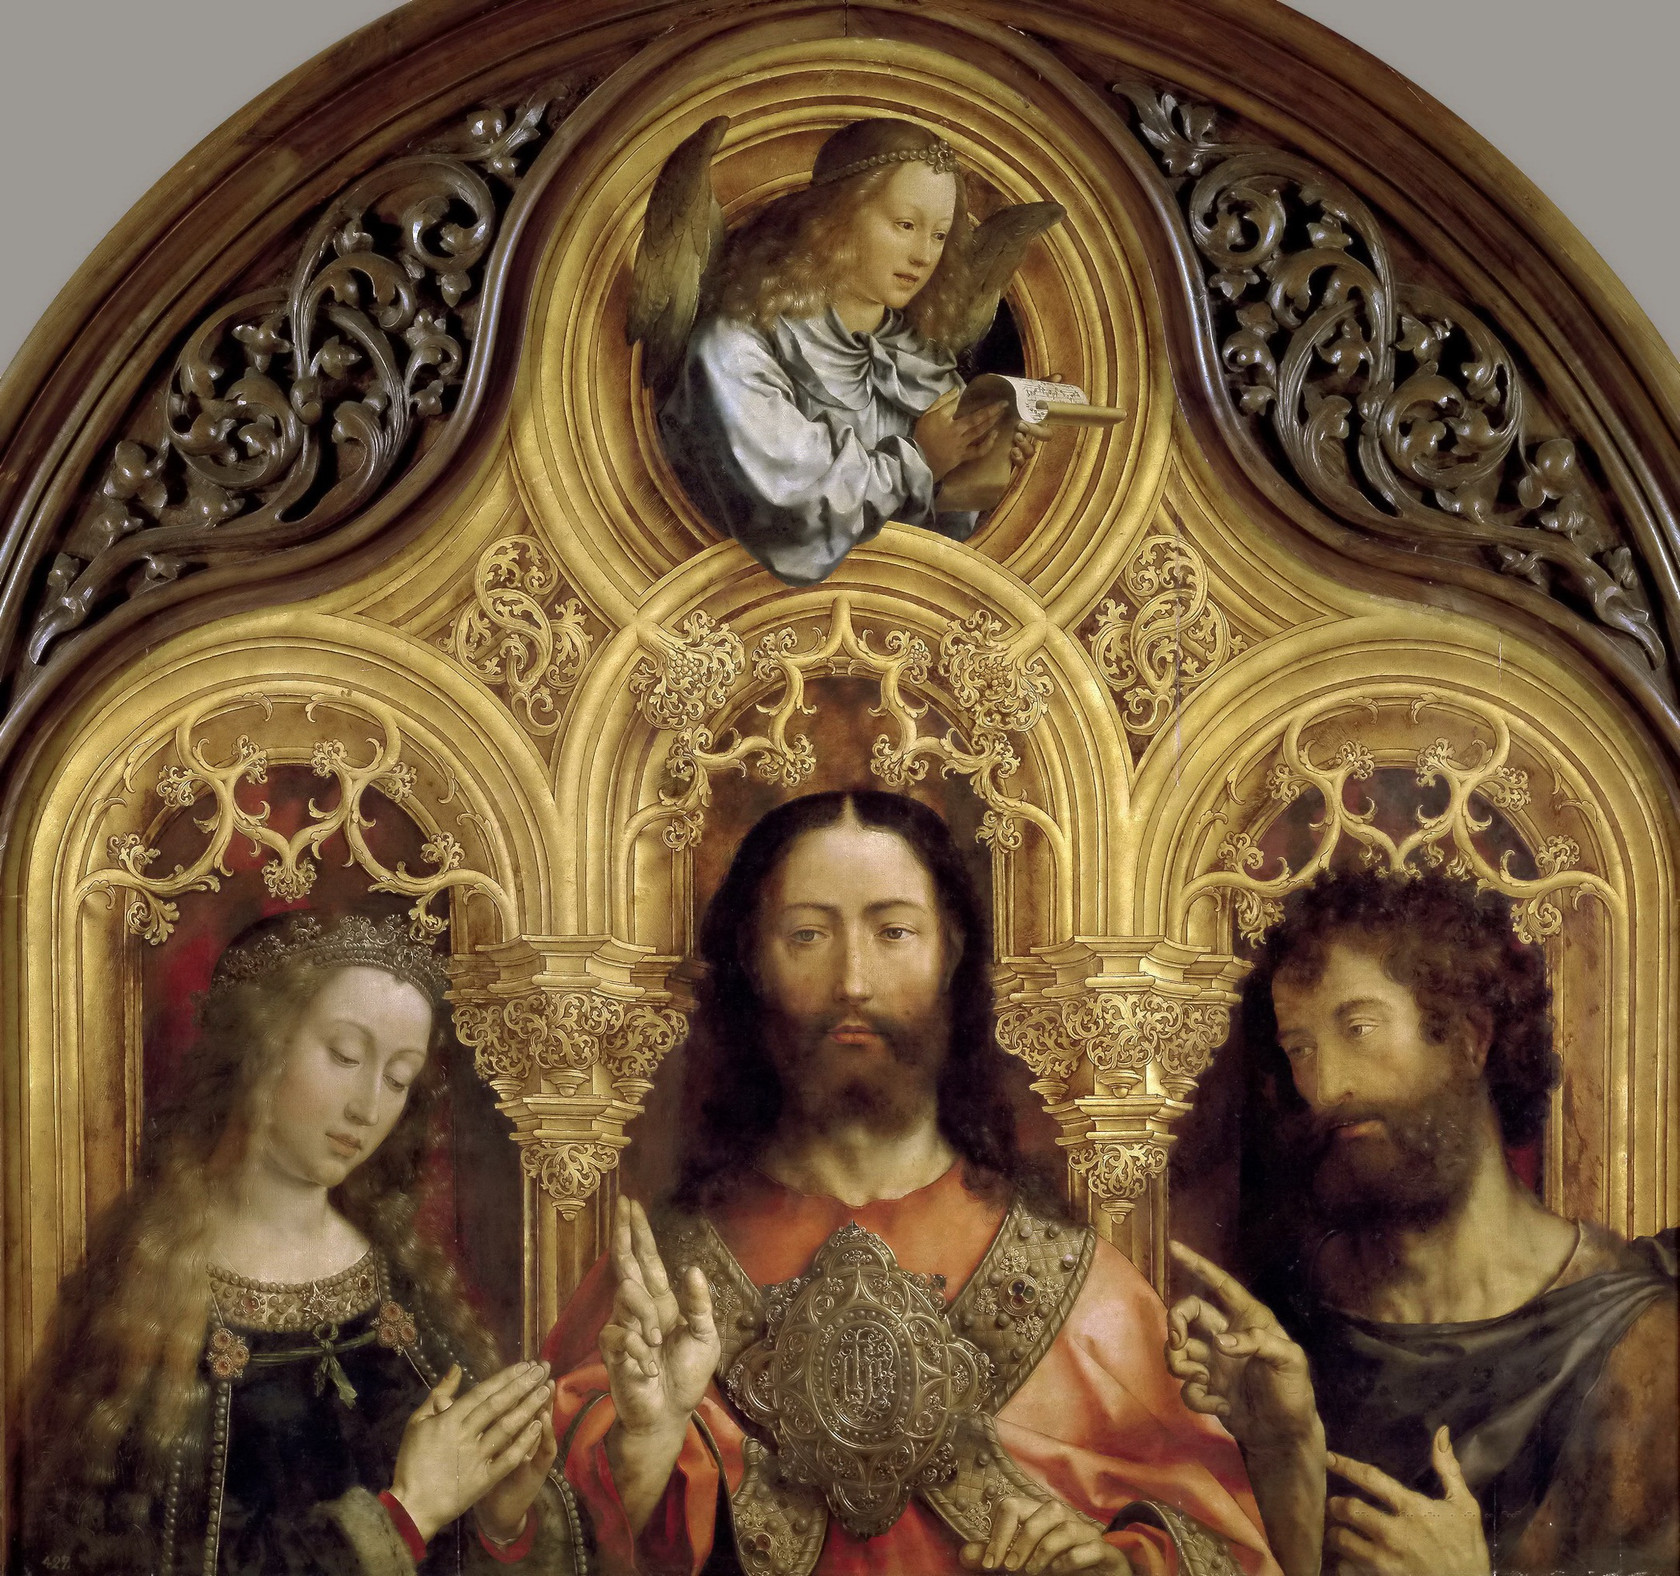 Картина - Христос между Девой Марией и Иоанном Крестителем, 1510 - 1515 - Музей Прадо